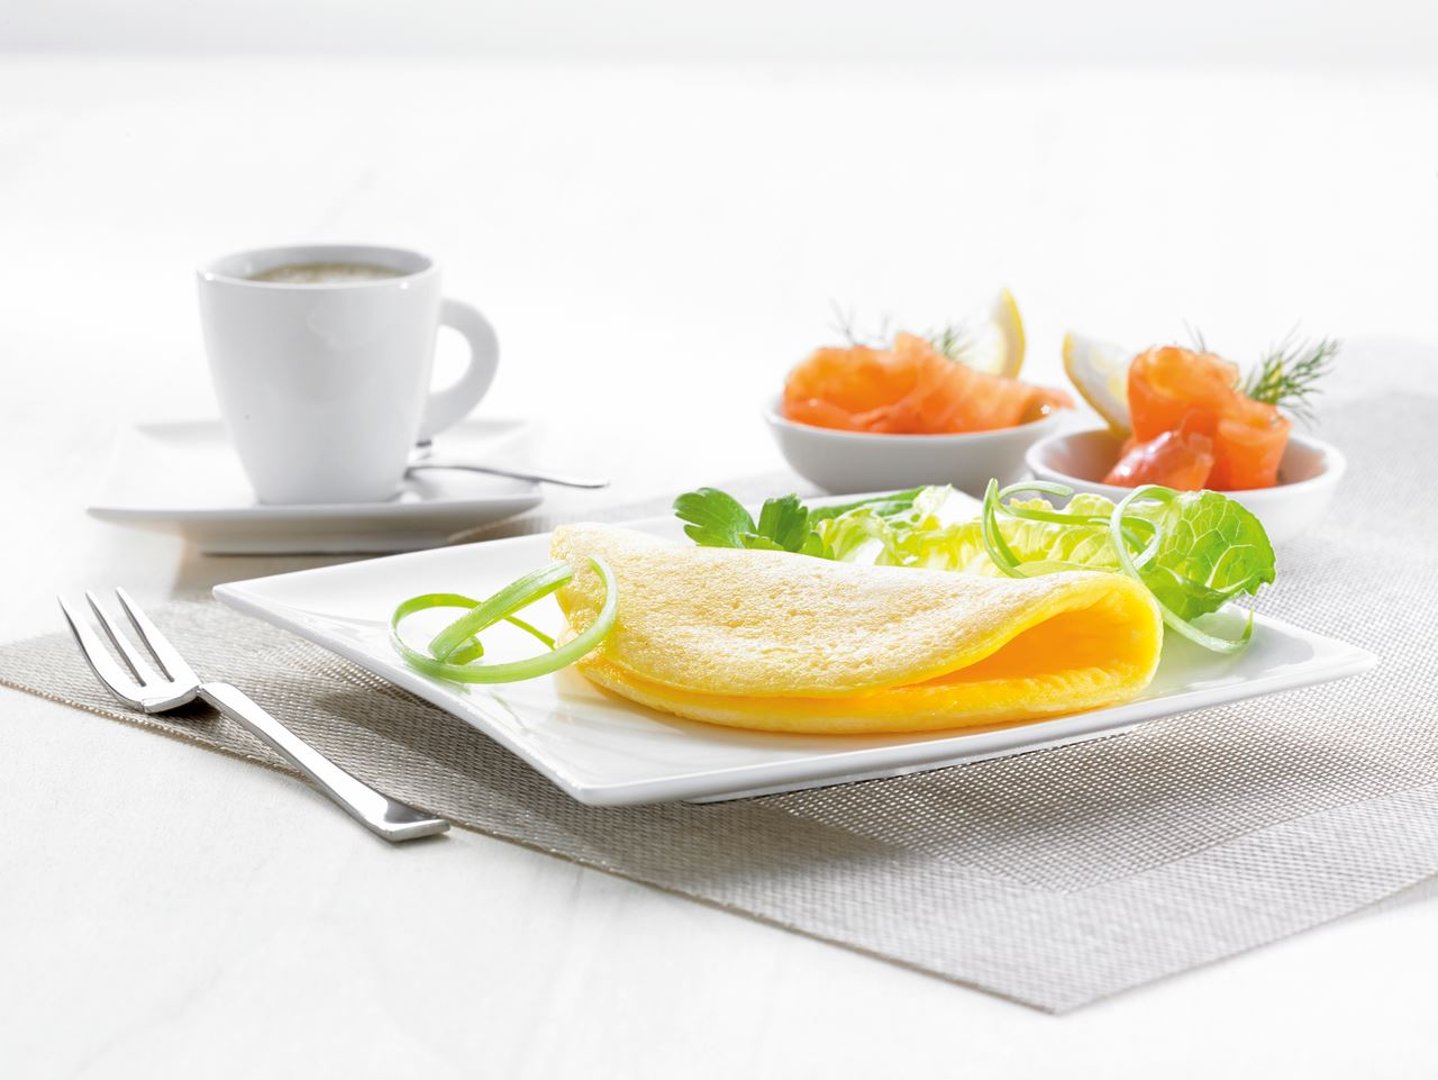 Eifix - Eier-Omelette Classic tiefgefroren 60 Stück à 85 g - 5,1 kg Karton